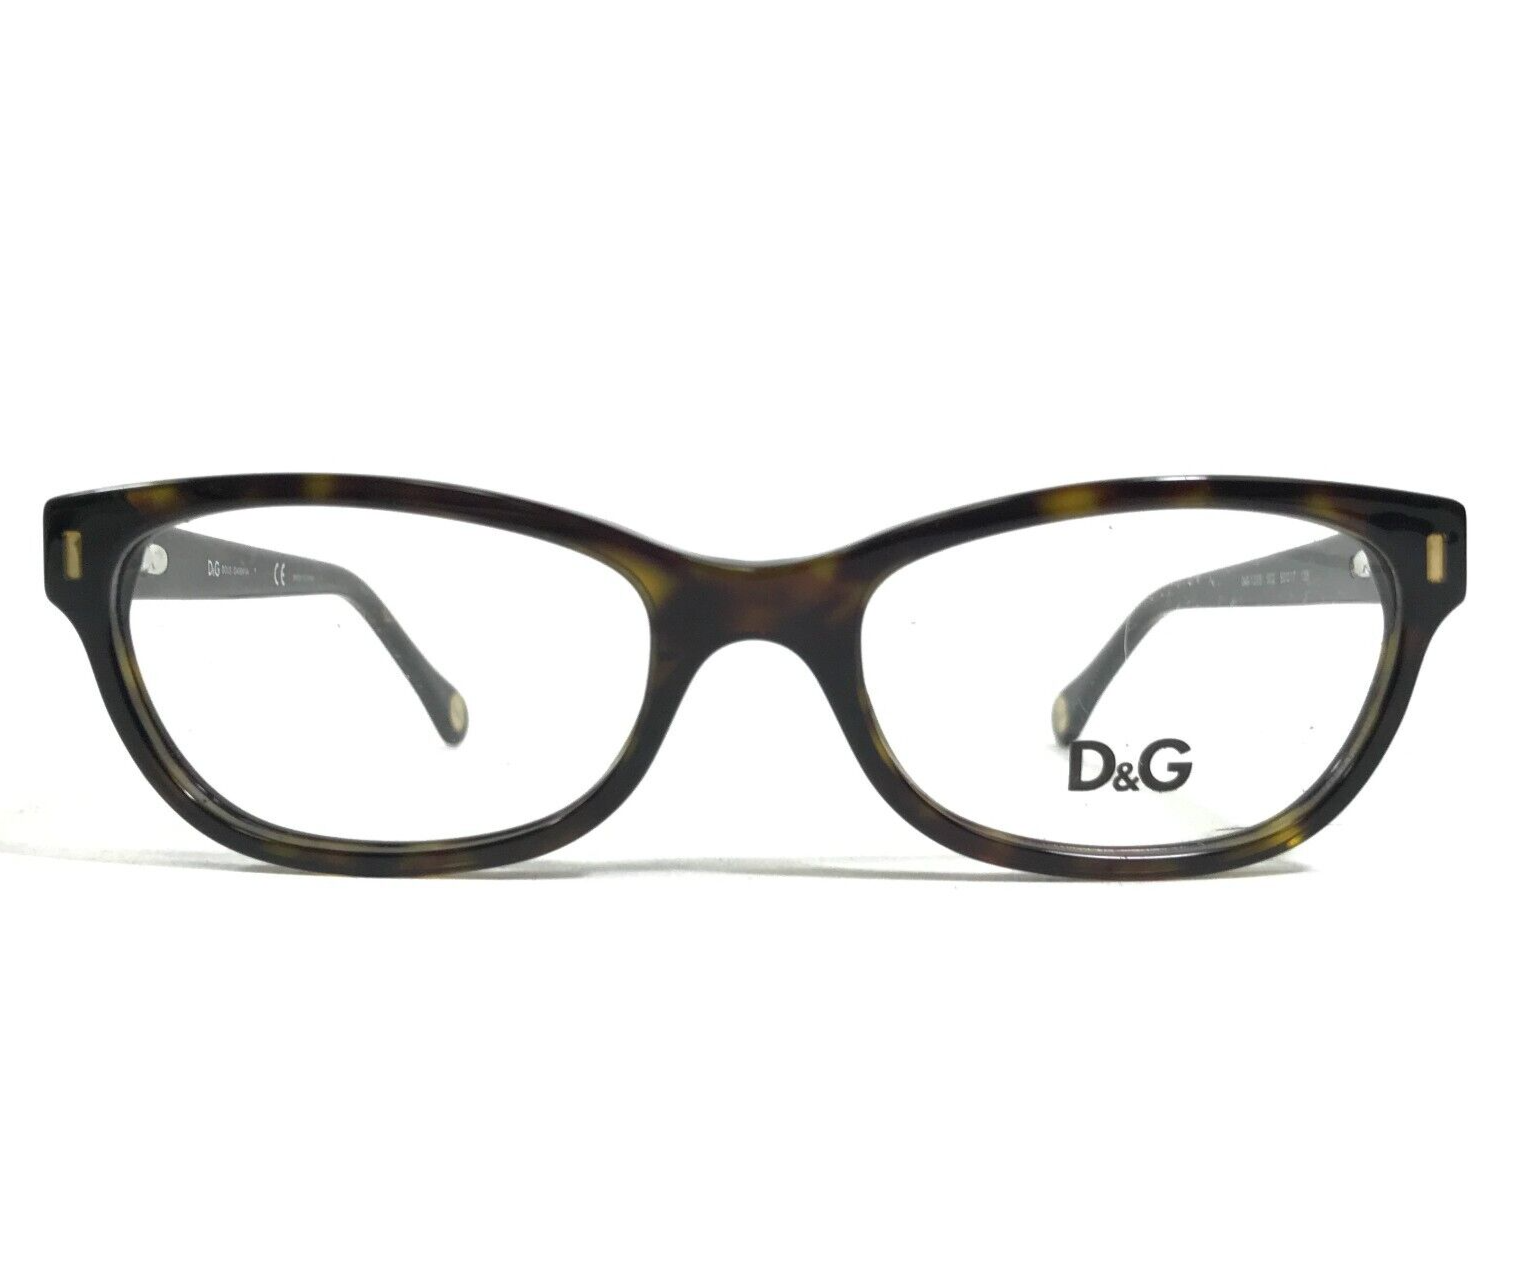 Dolce & Gabbana Eyeglasses Frames D&G1205 502 Tortoise Cat Eye 50-17-135 - $74.75